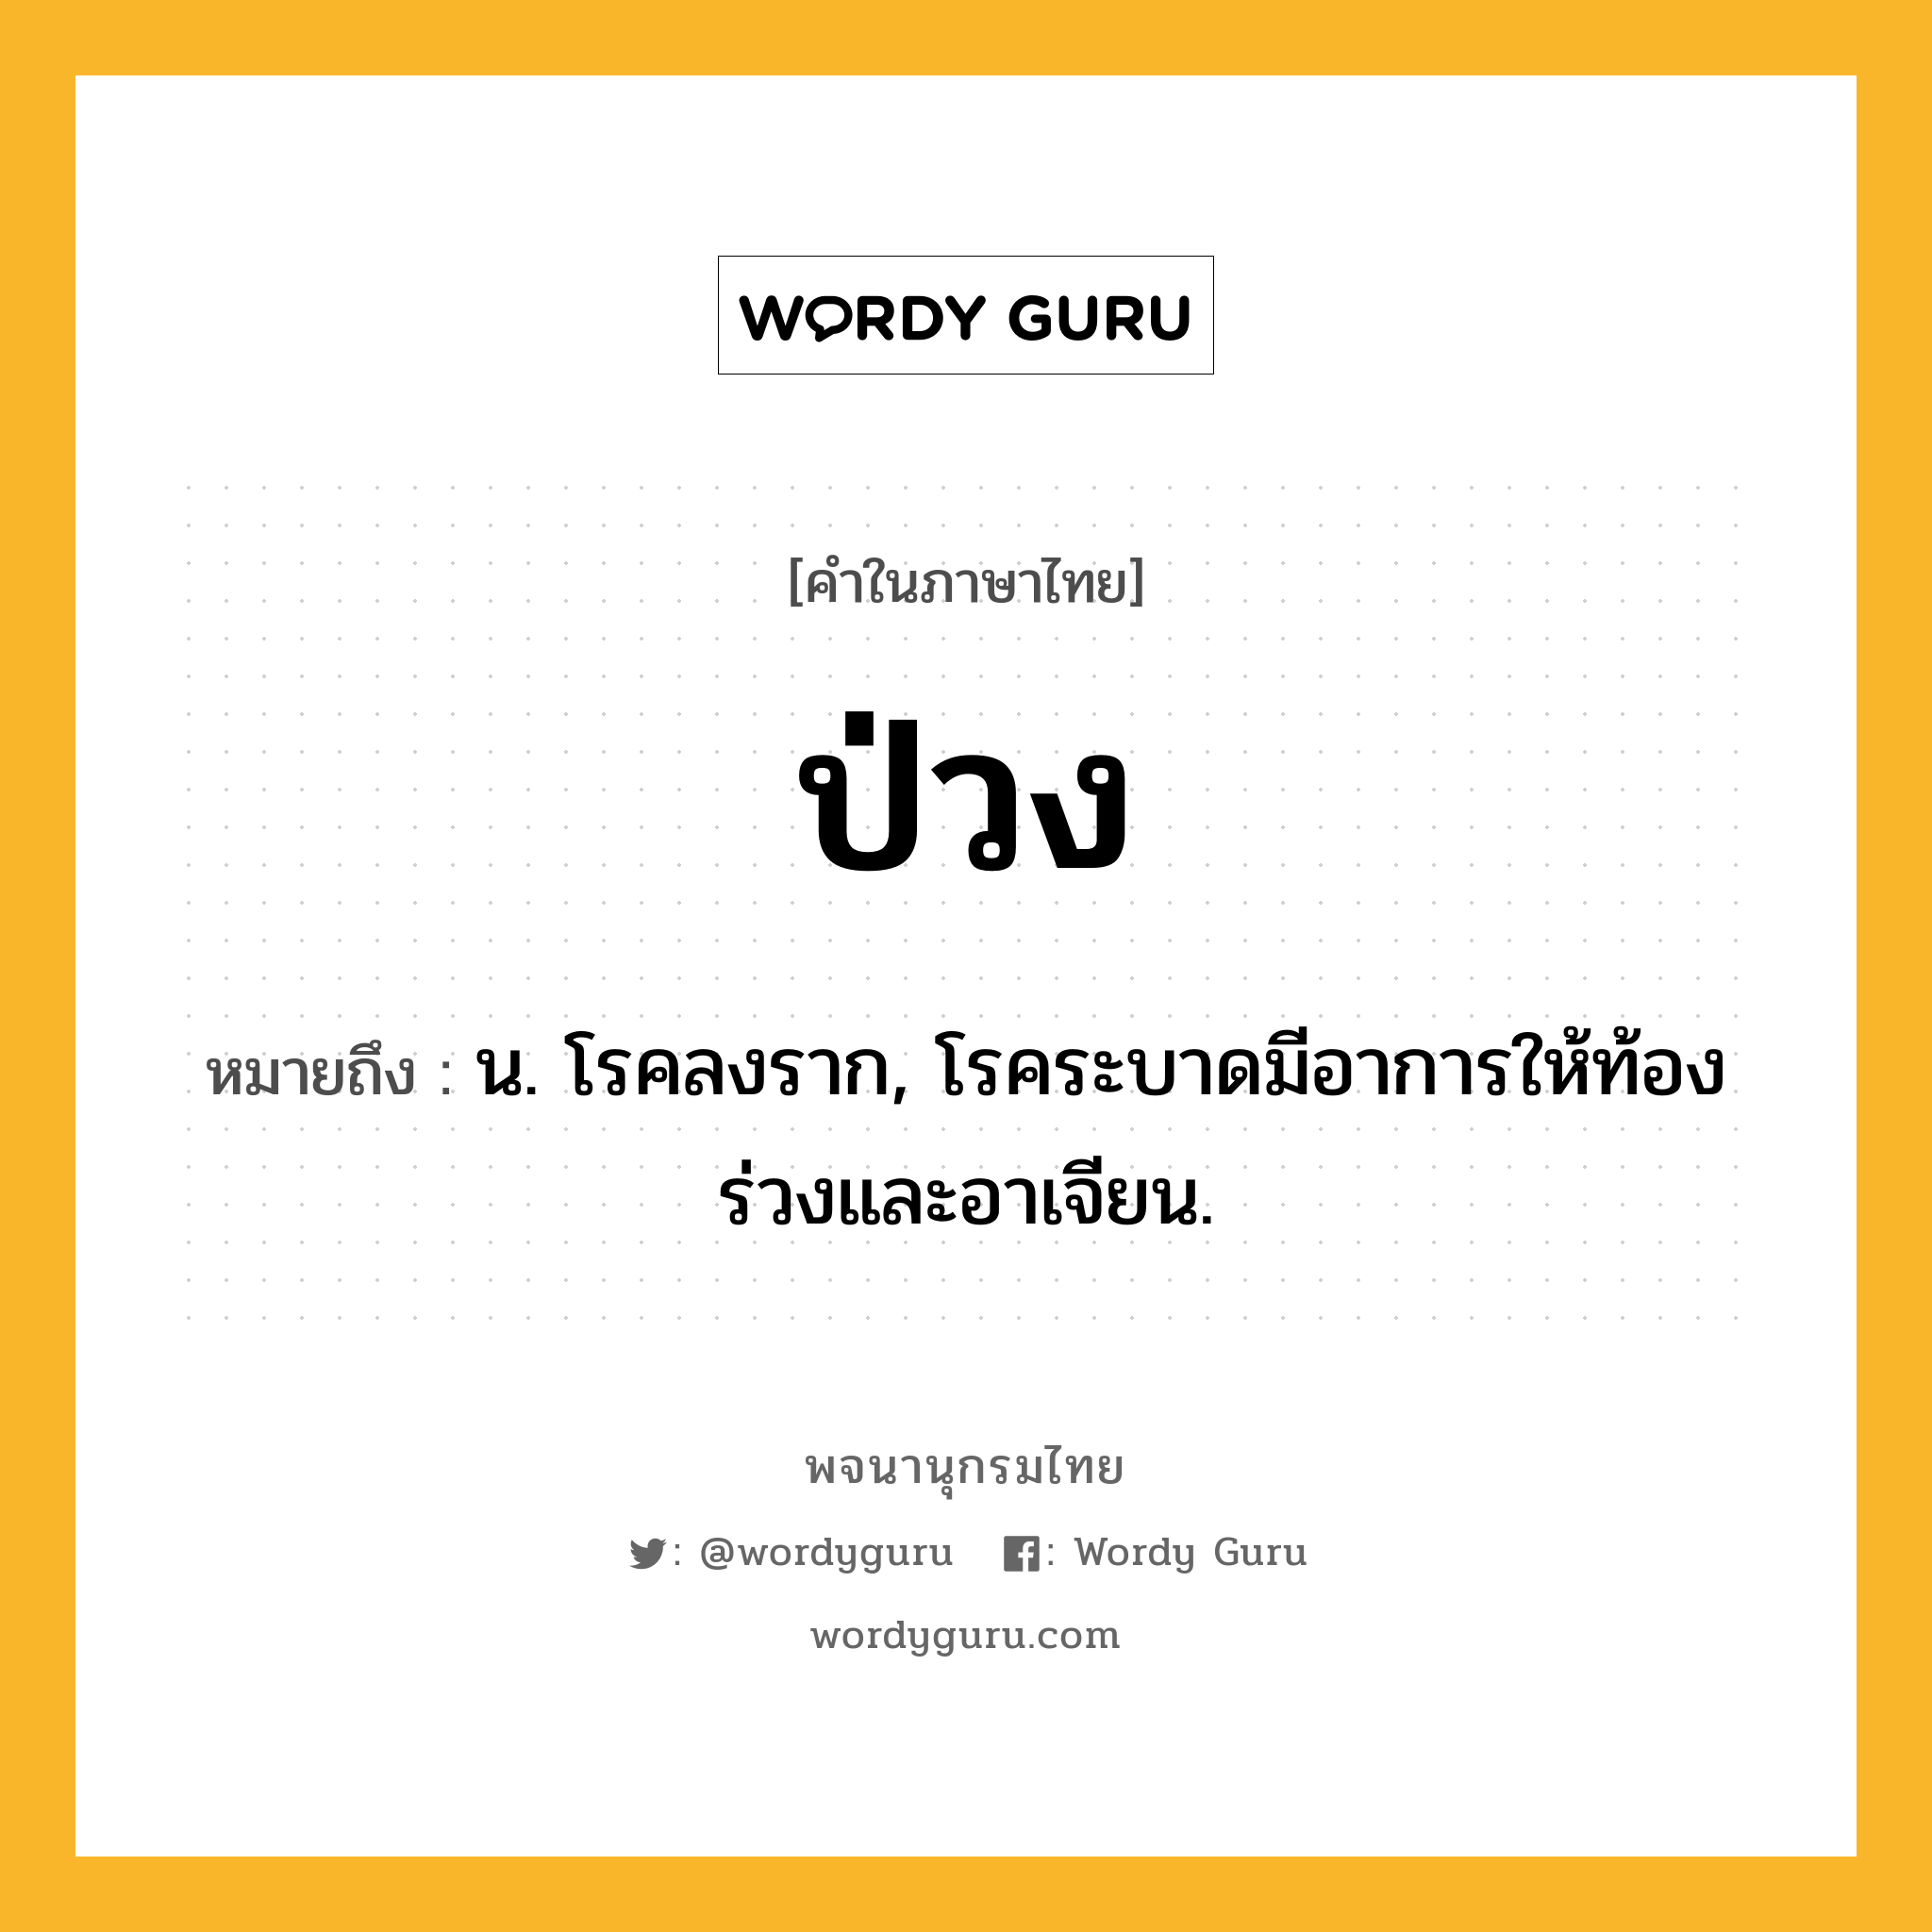 ป่วง หมายถึงอะไร?, คำในภาษาไทย ป่วง หมายถึง น. โรคลงราก, โรคระบาดมีอาการให้ท้องร่วงและอาเจียน.